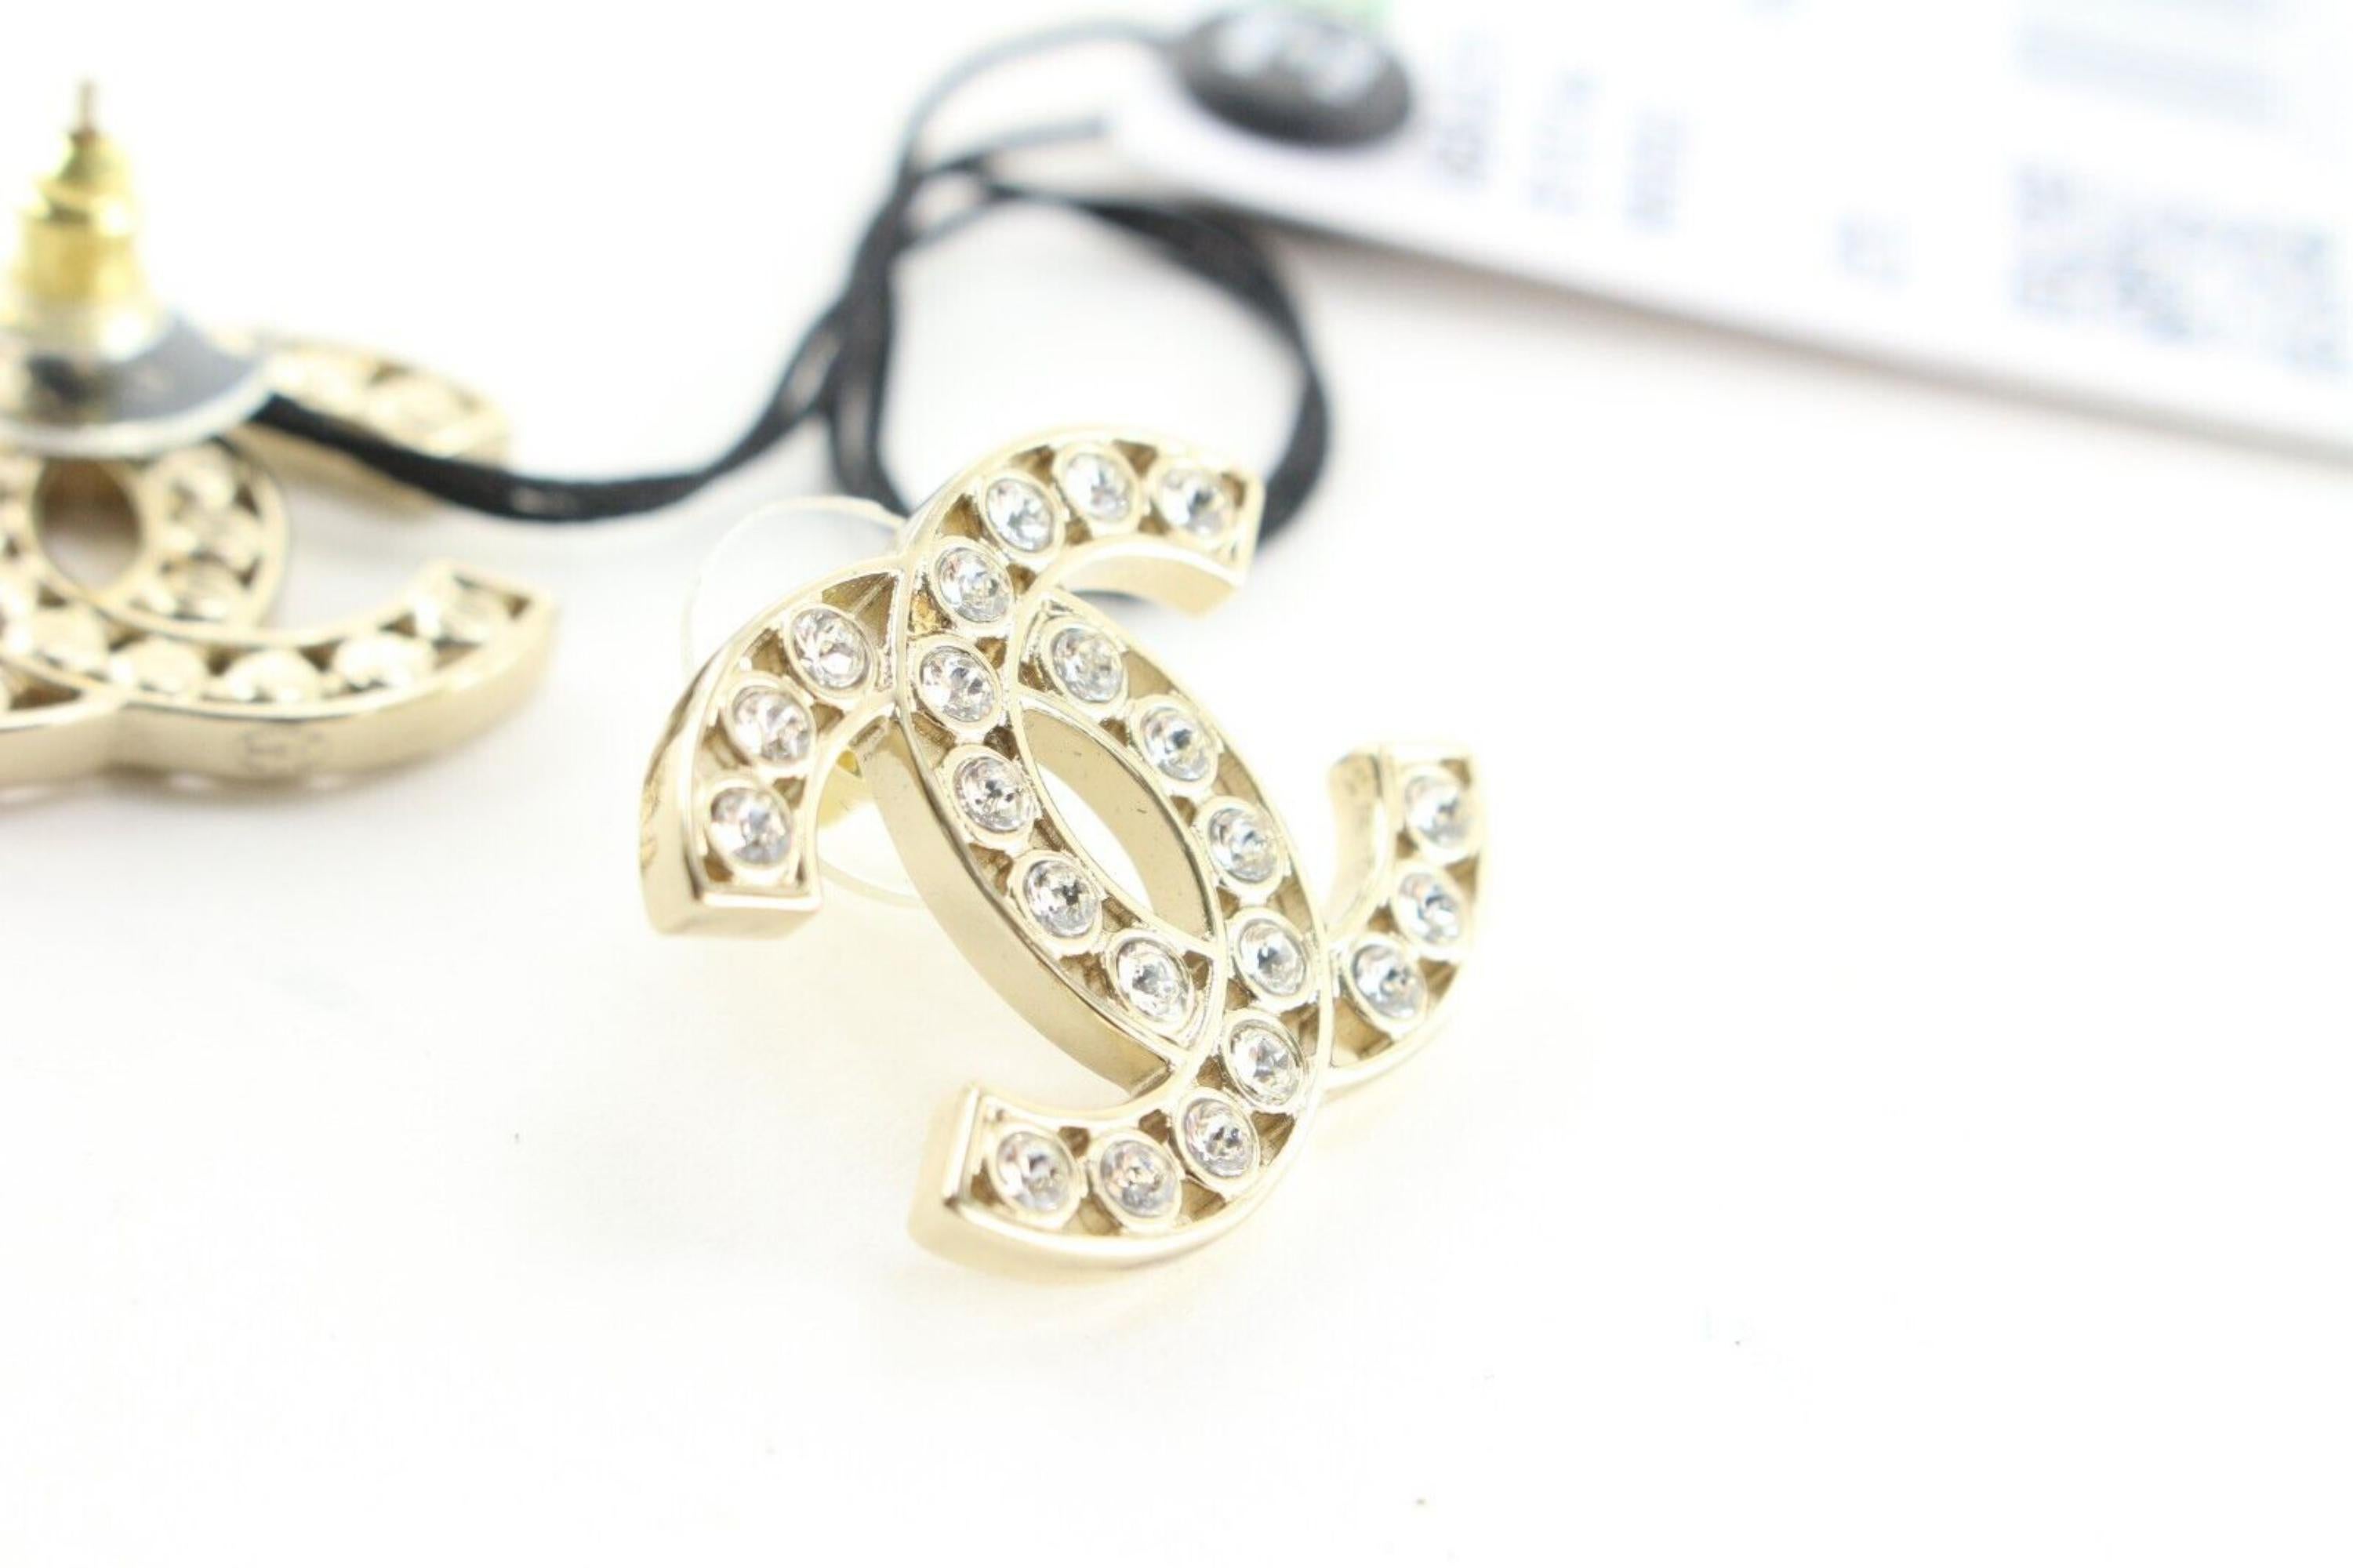 Chanel 23s CC Pierce Pearl Earrings Golden Gold 3CK0509 5